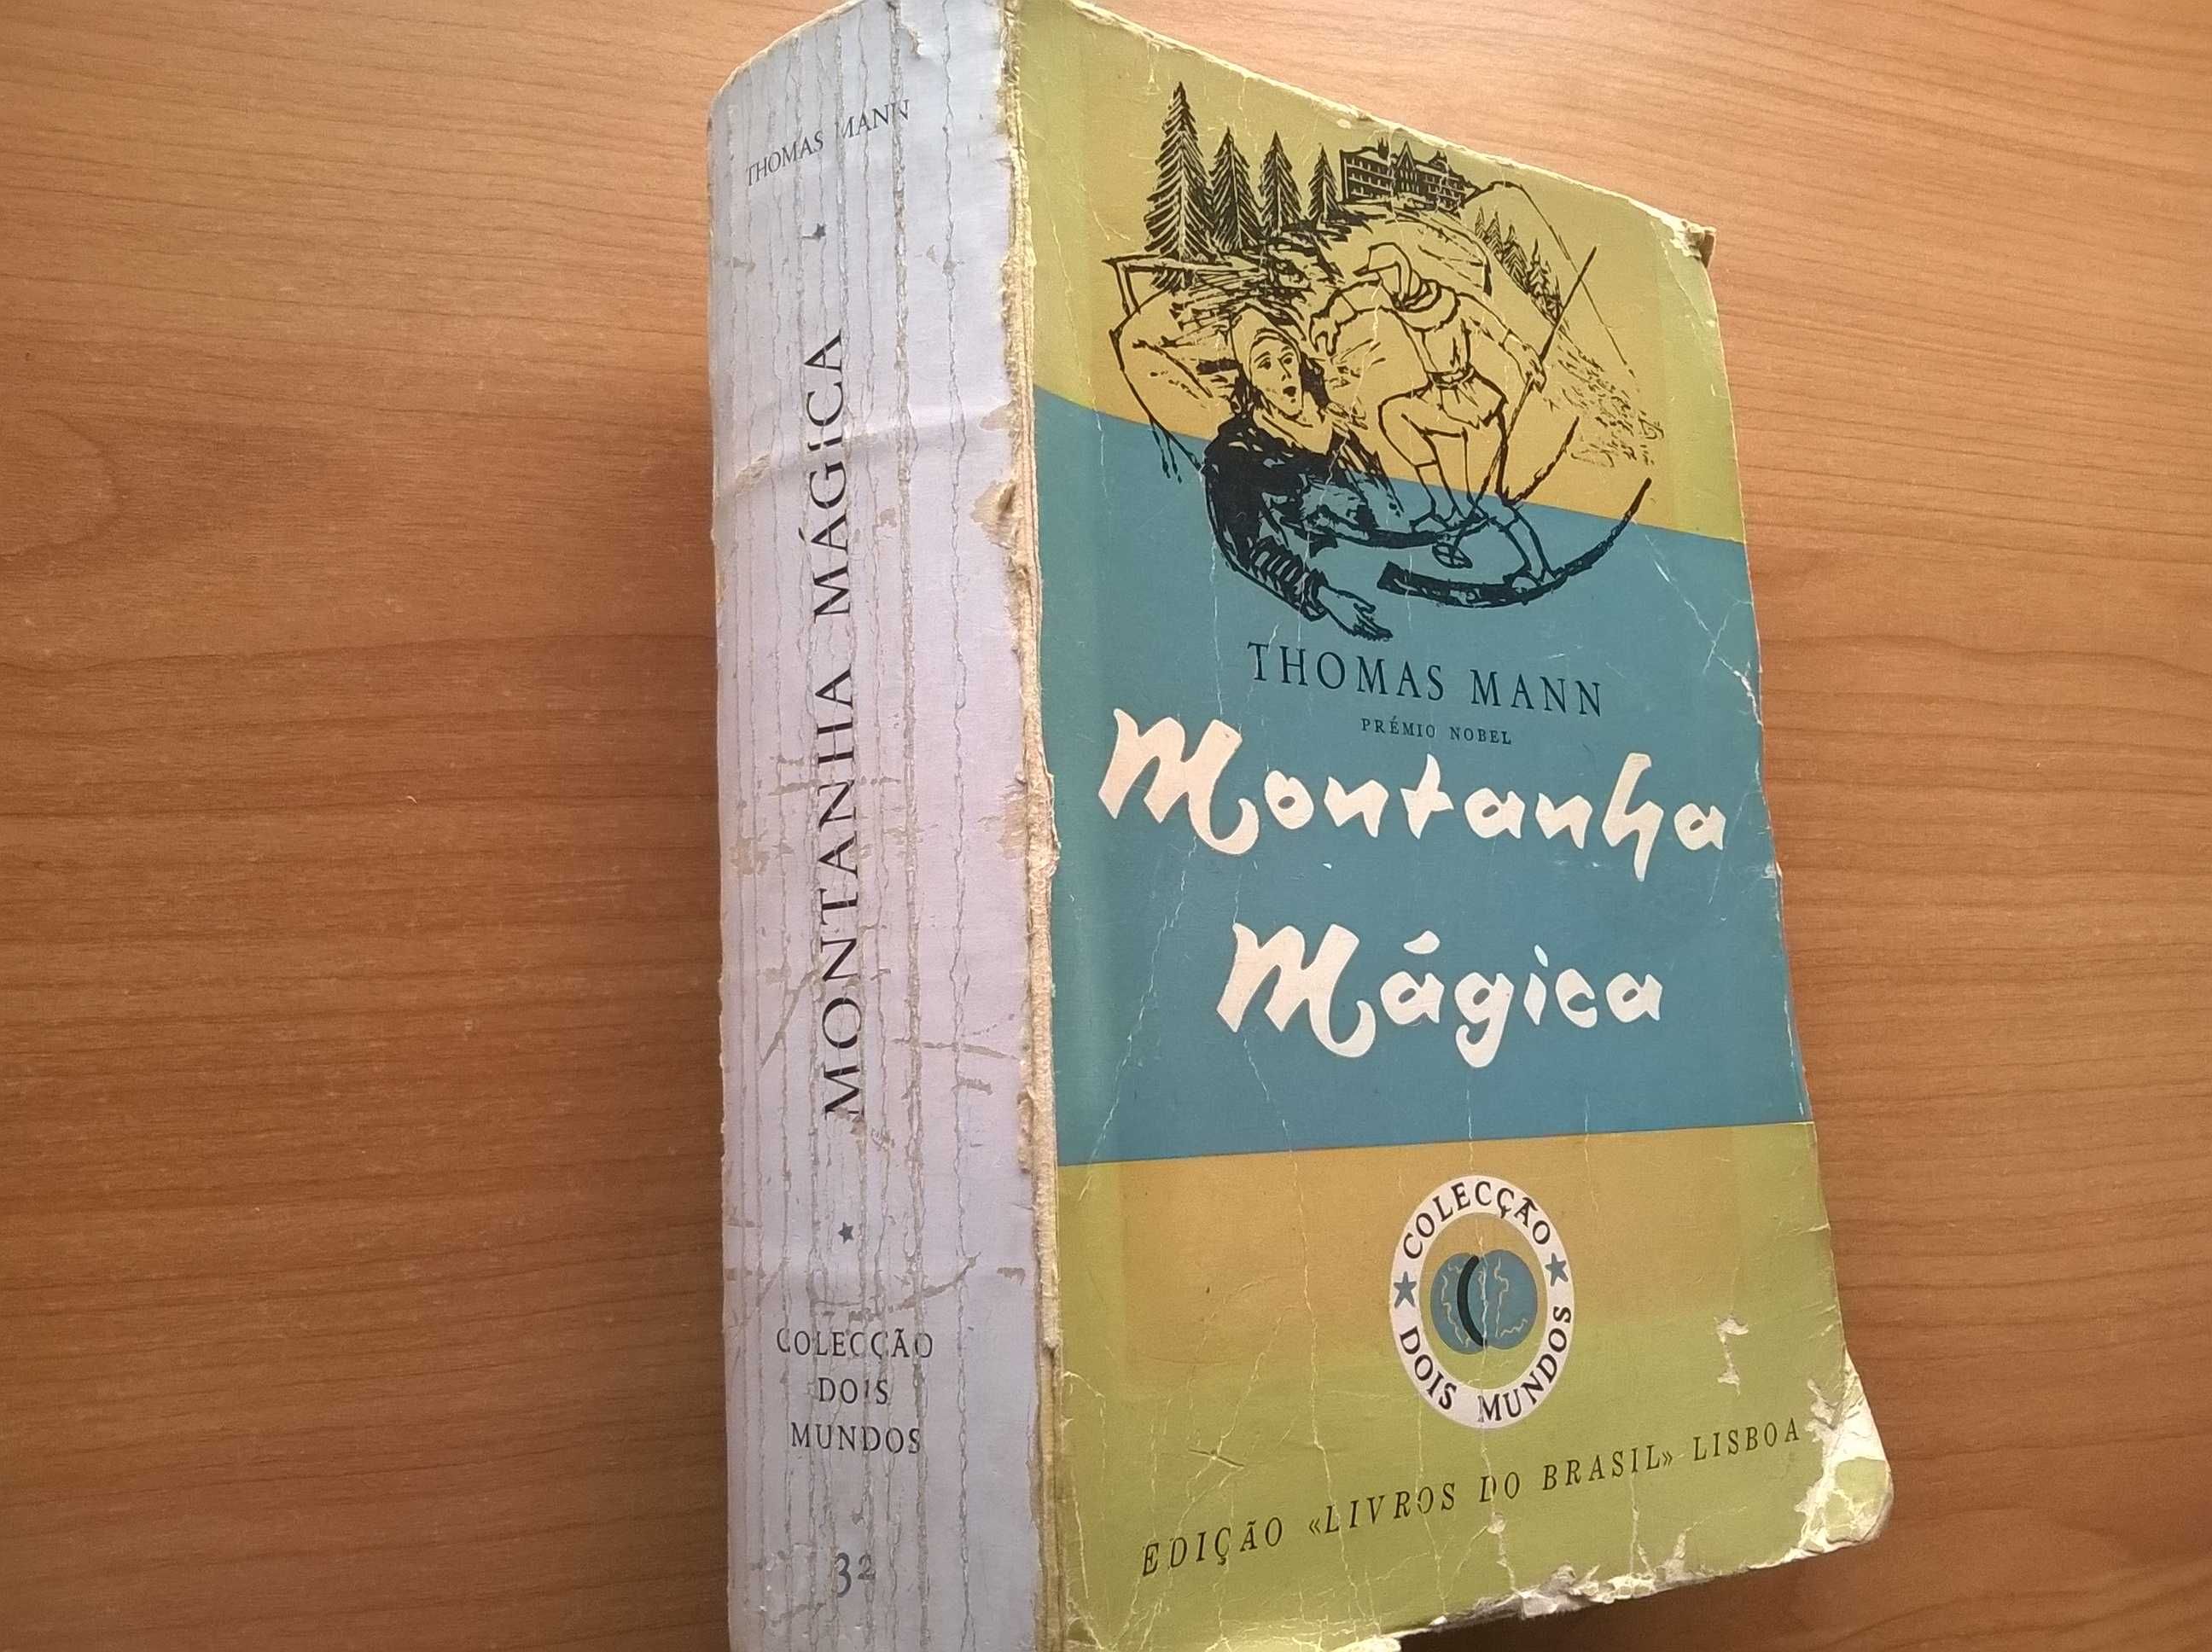 Montanha Mágica - Thomas Mann (Prémio Nobel 1929)